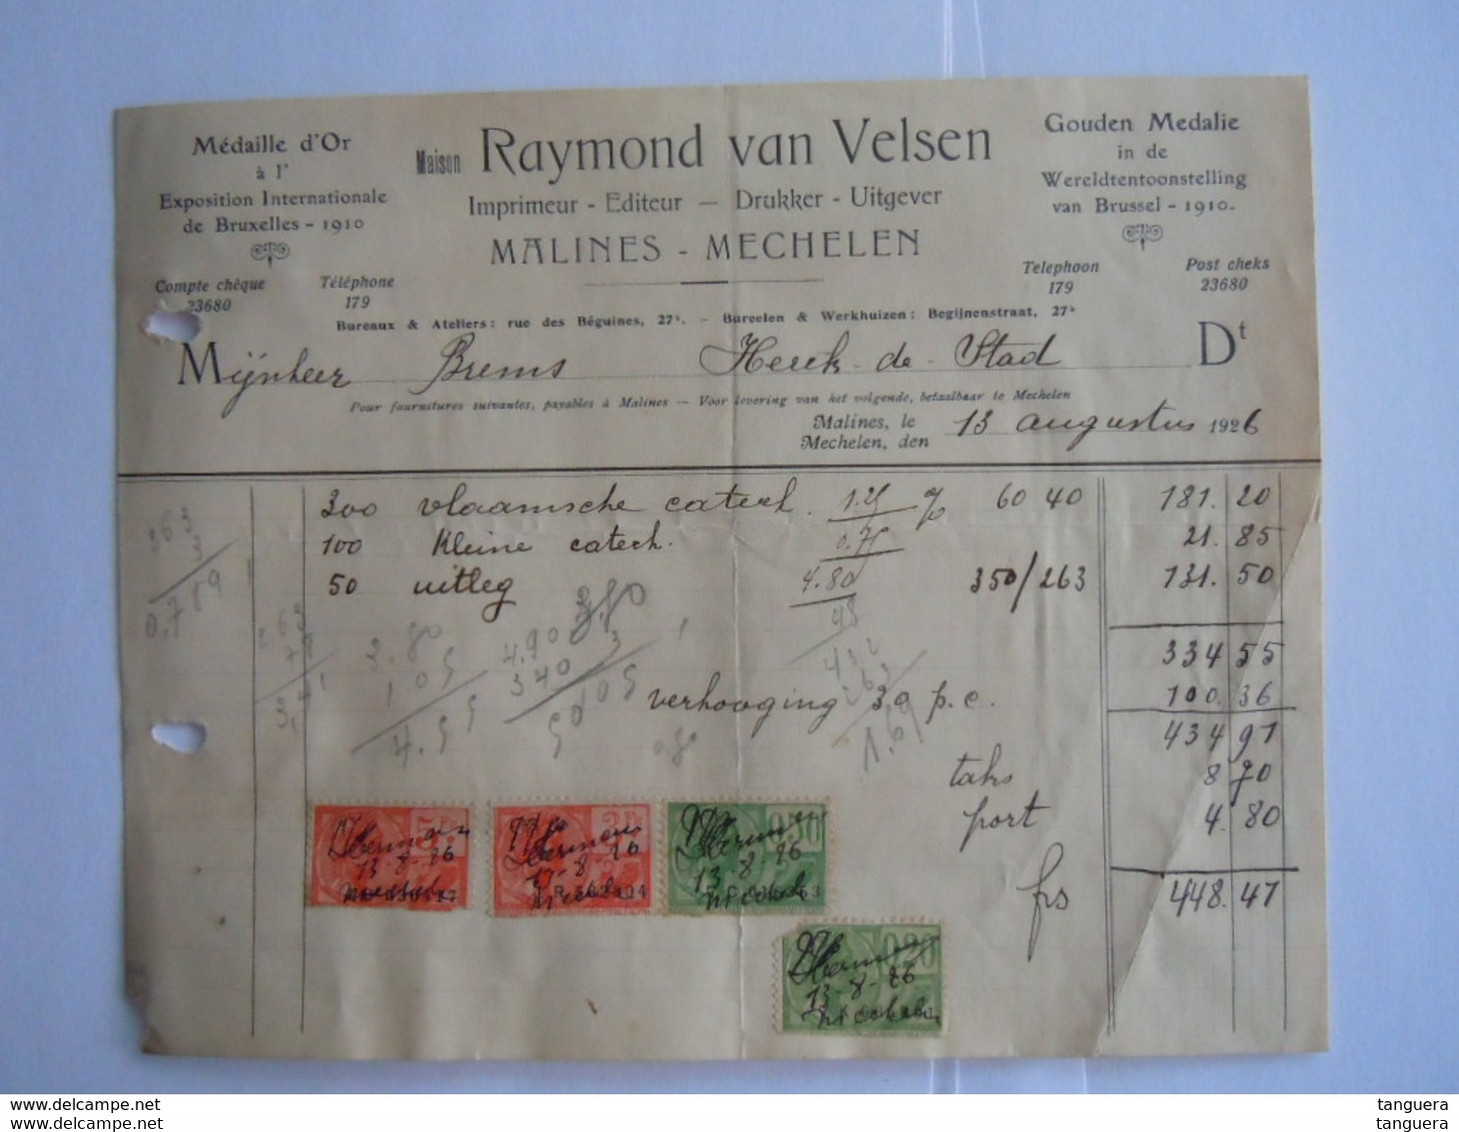 1926 Raymond Van Velsen Drukker Uitgever Imprimeur Mechelen Malines Facture Factuur Brems Herck-de -stad Taxe  8,70 Fr - Printing & Stationeries